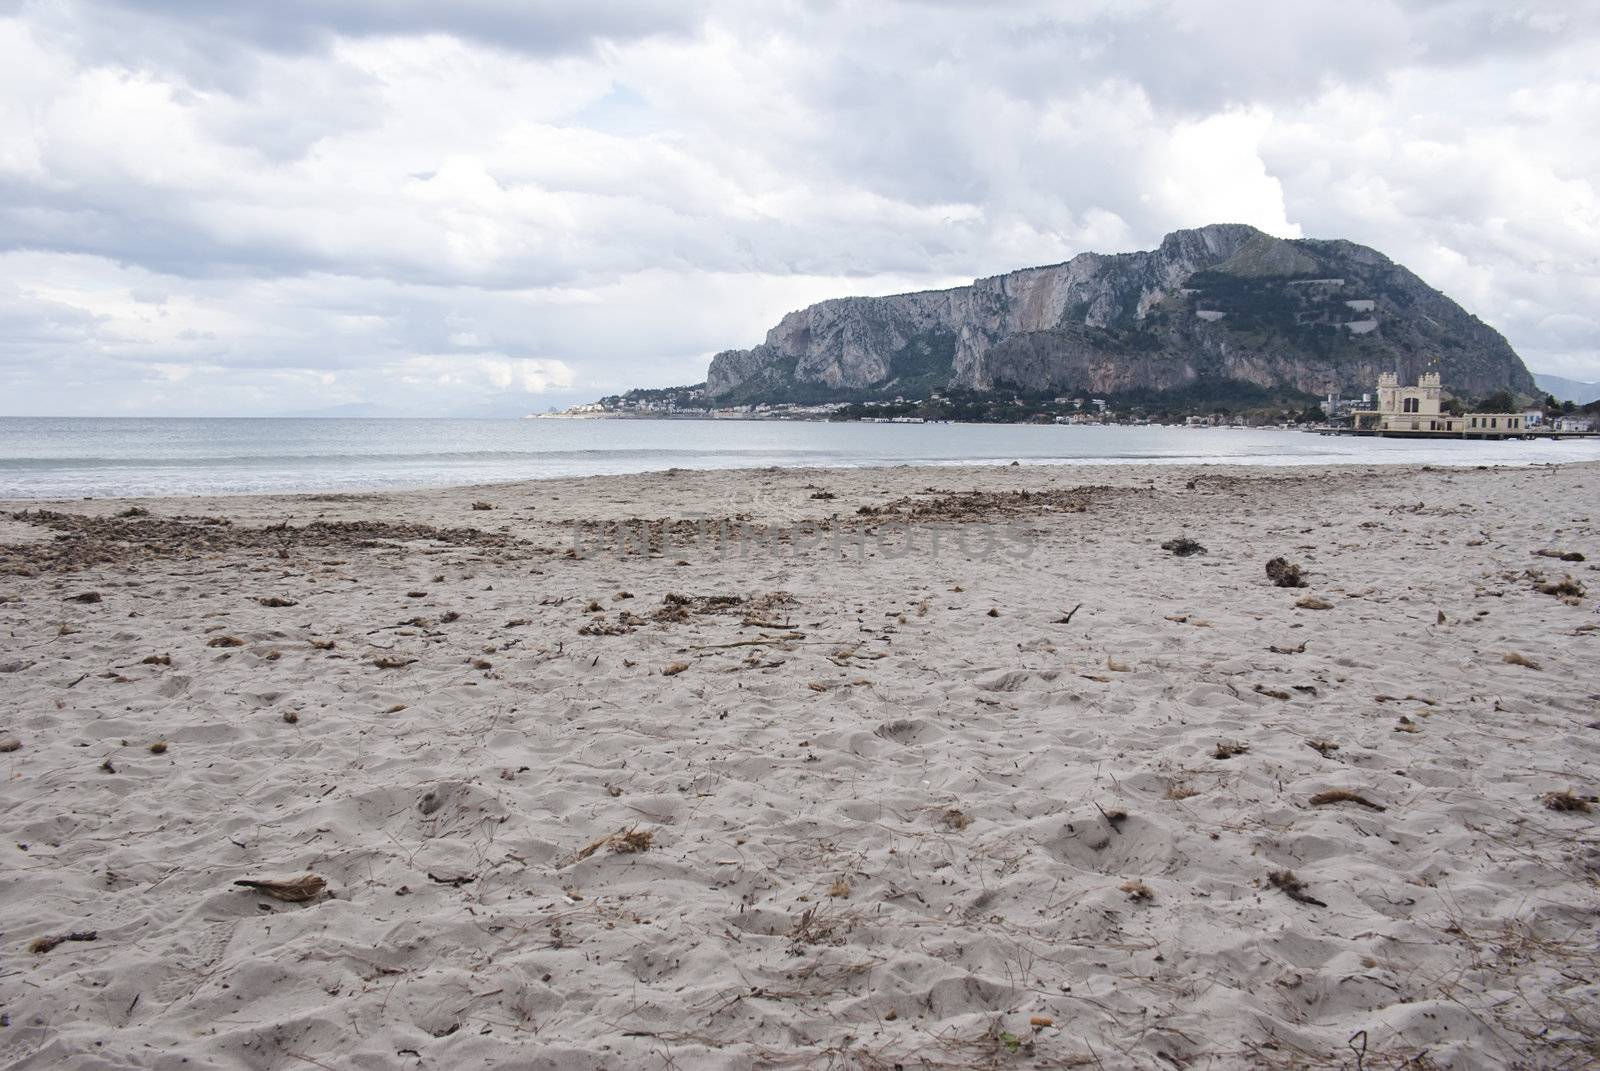 The famous beach of "Mondello" ; in Palermo, Sicily